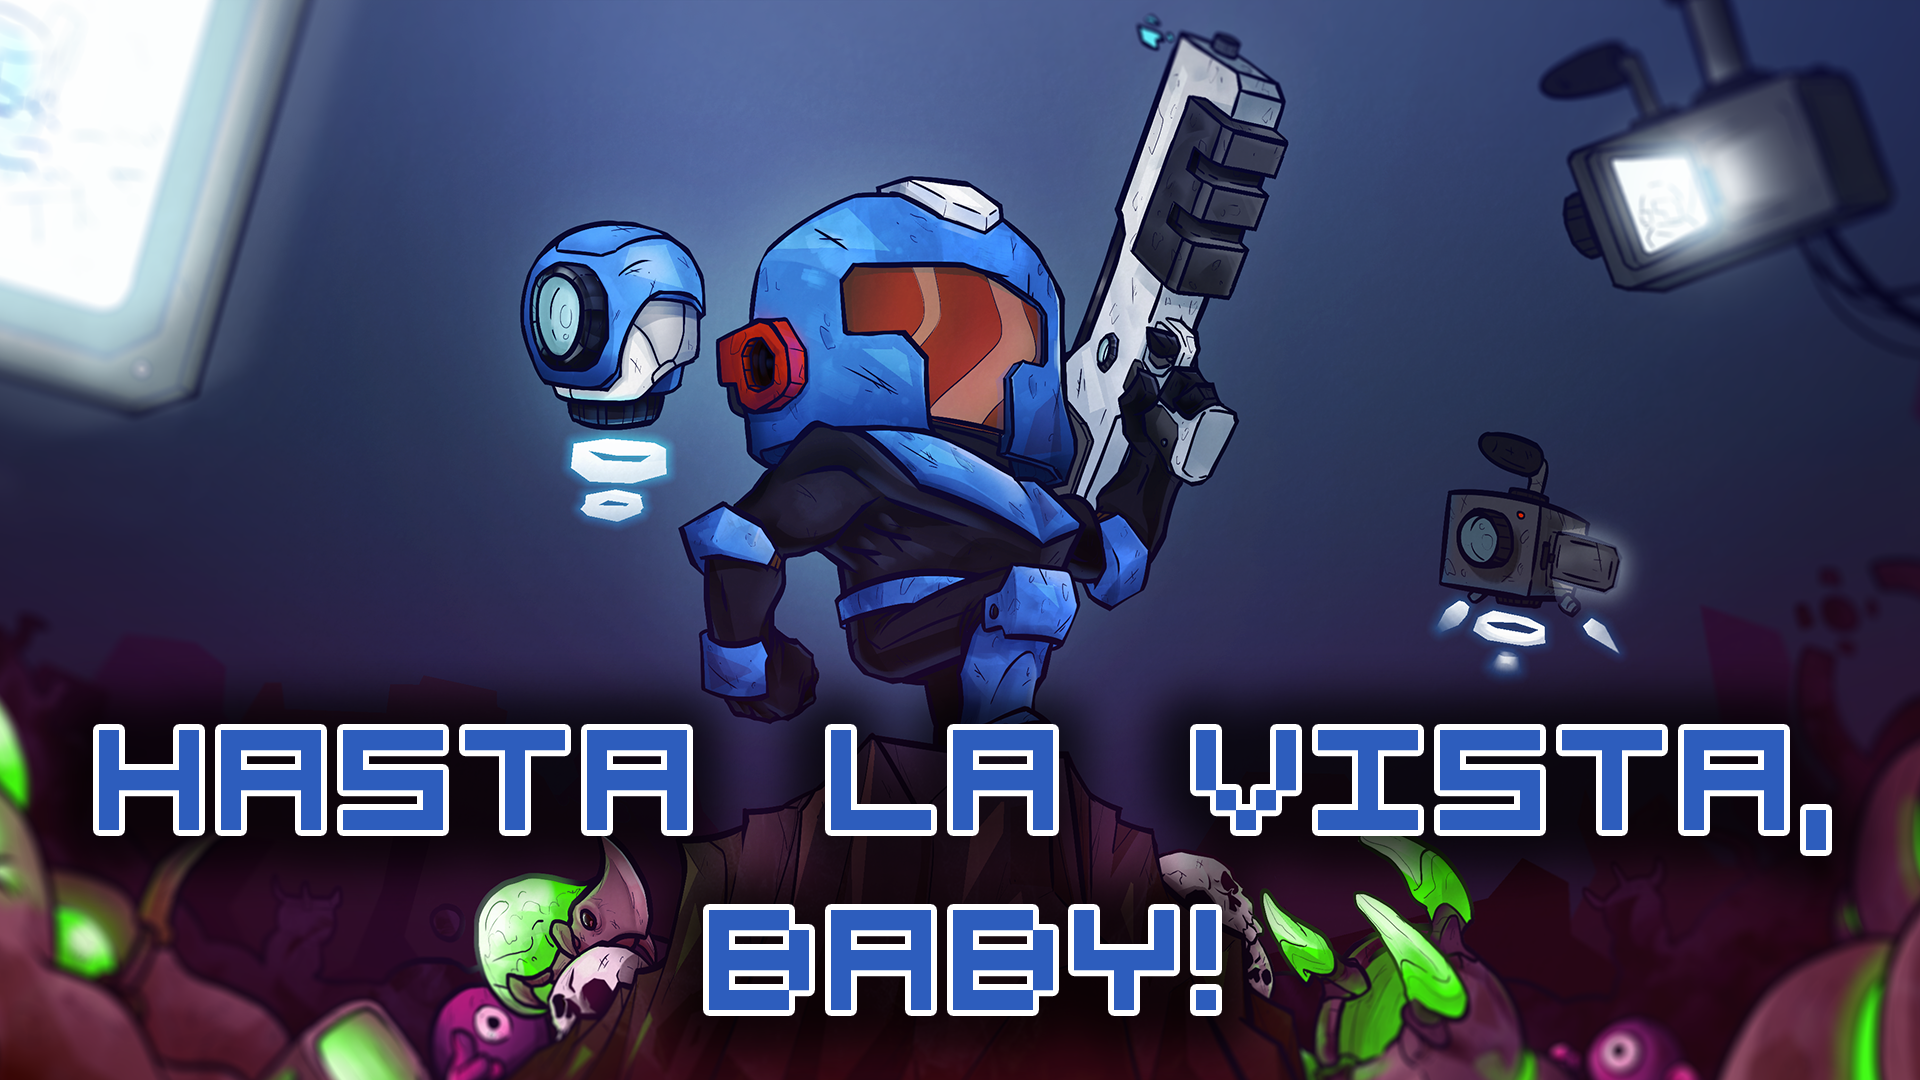 Icon for "Hasta la vista, baby!"